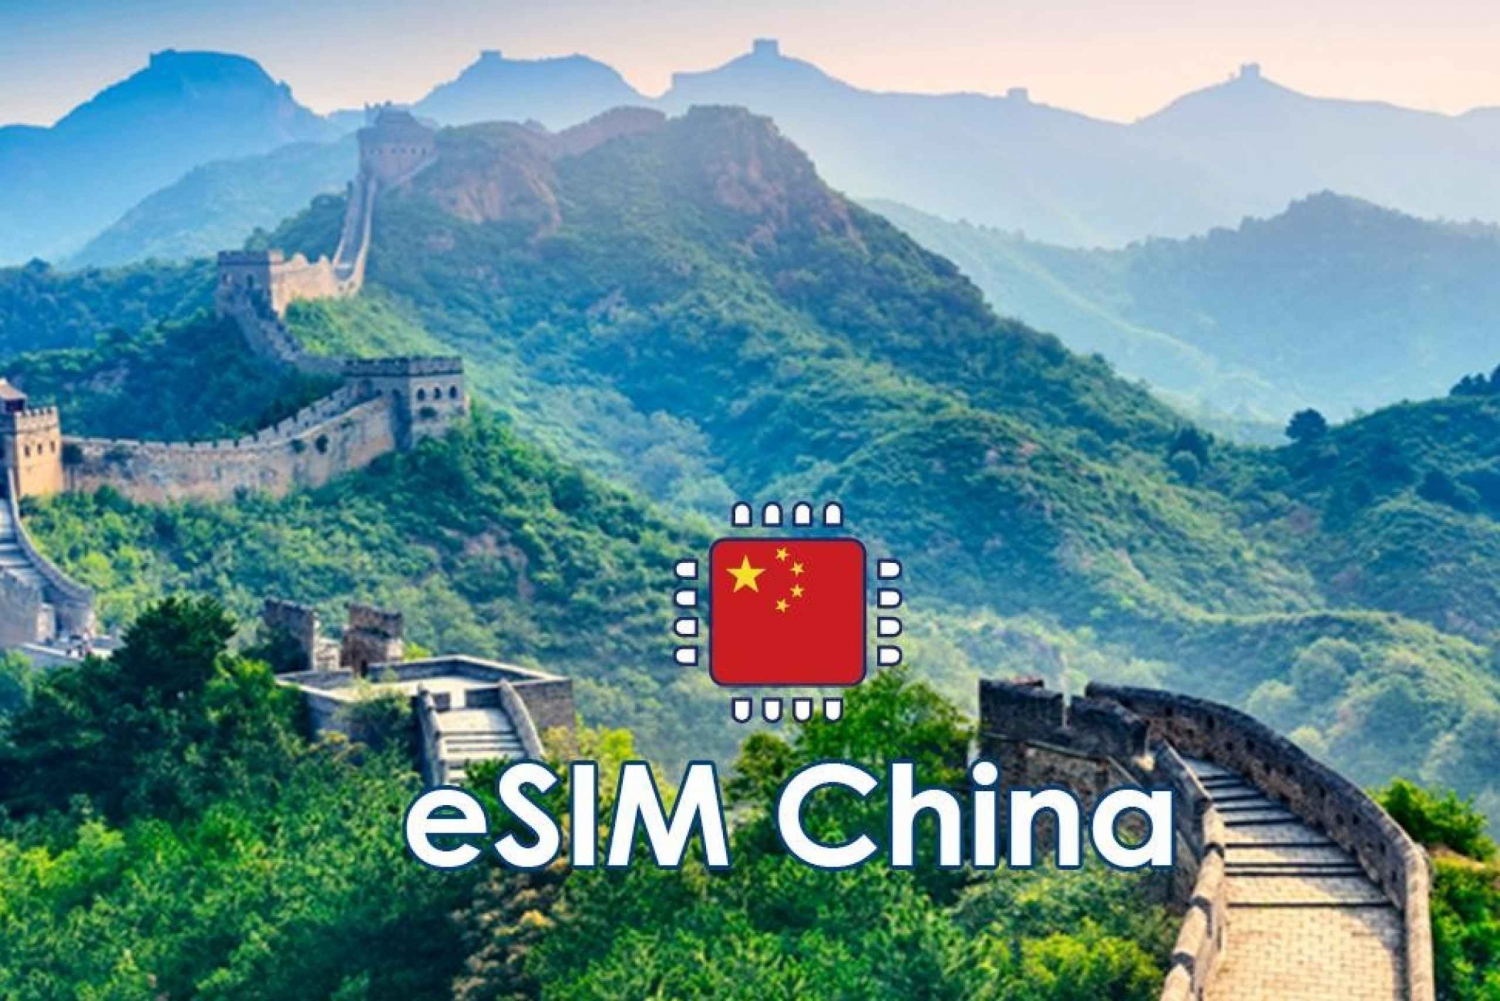 Cina: Piano dati mobile eSIM - 10GB